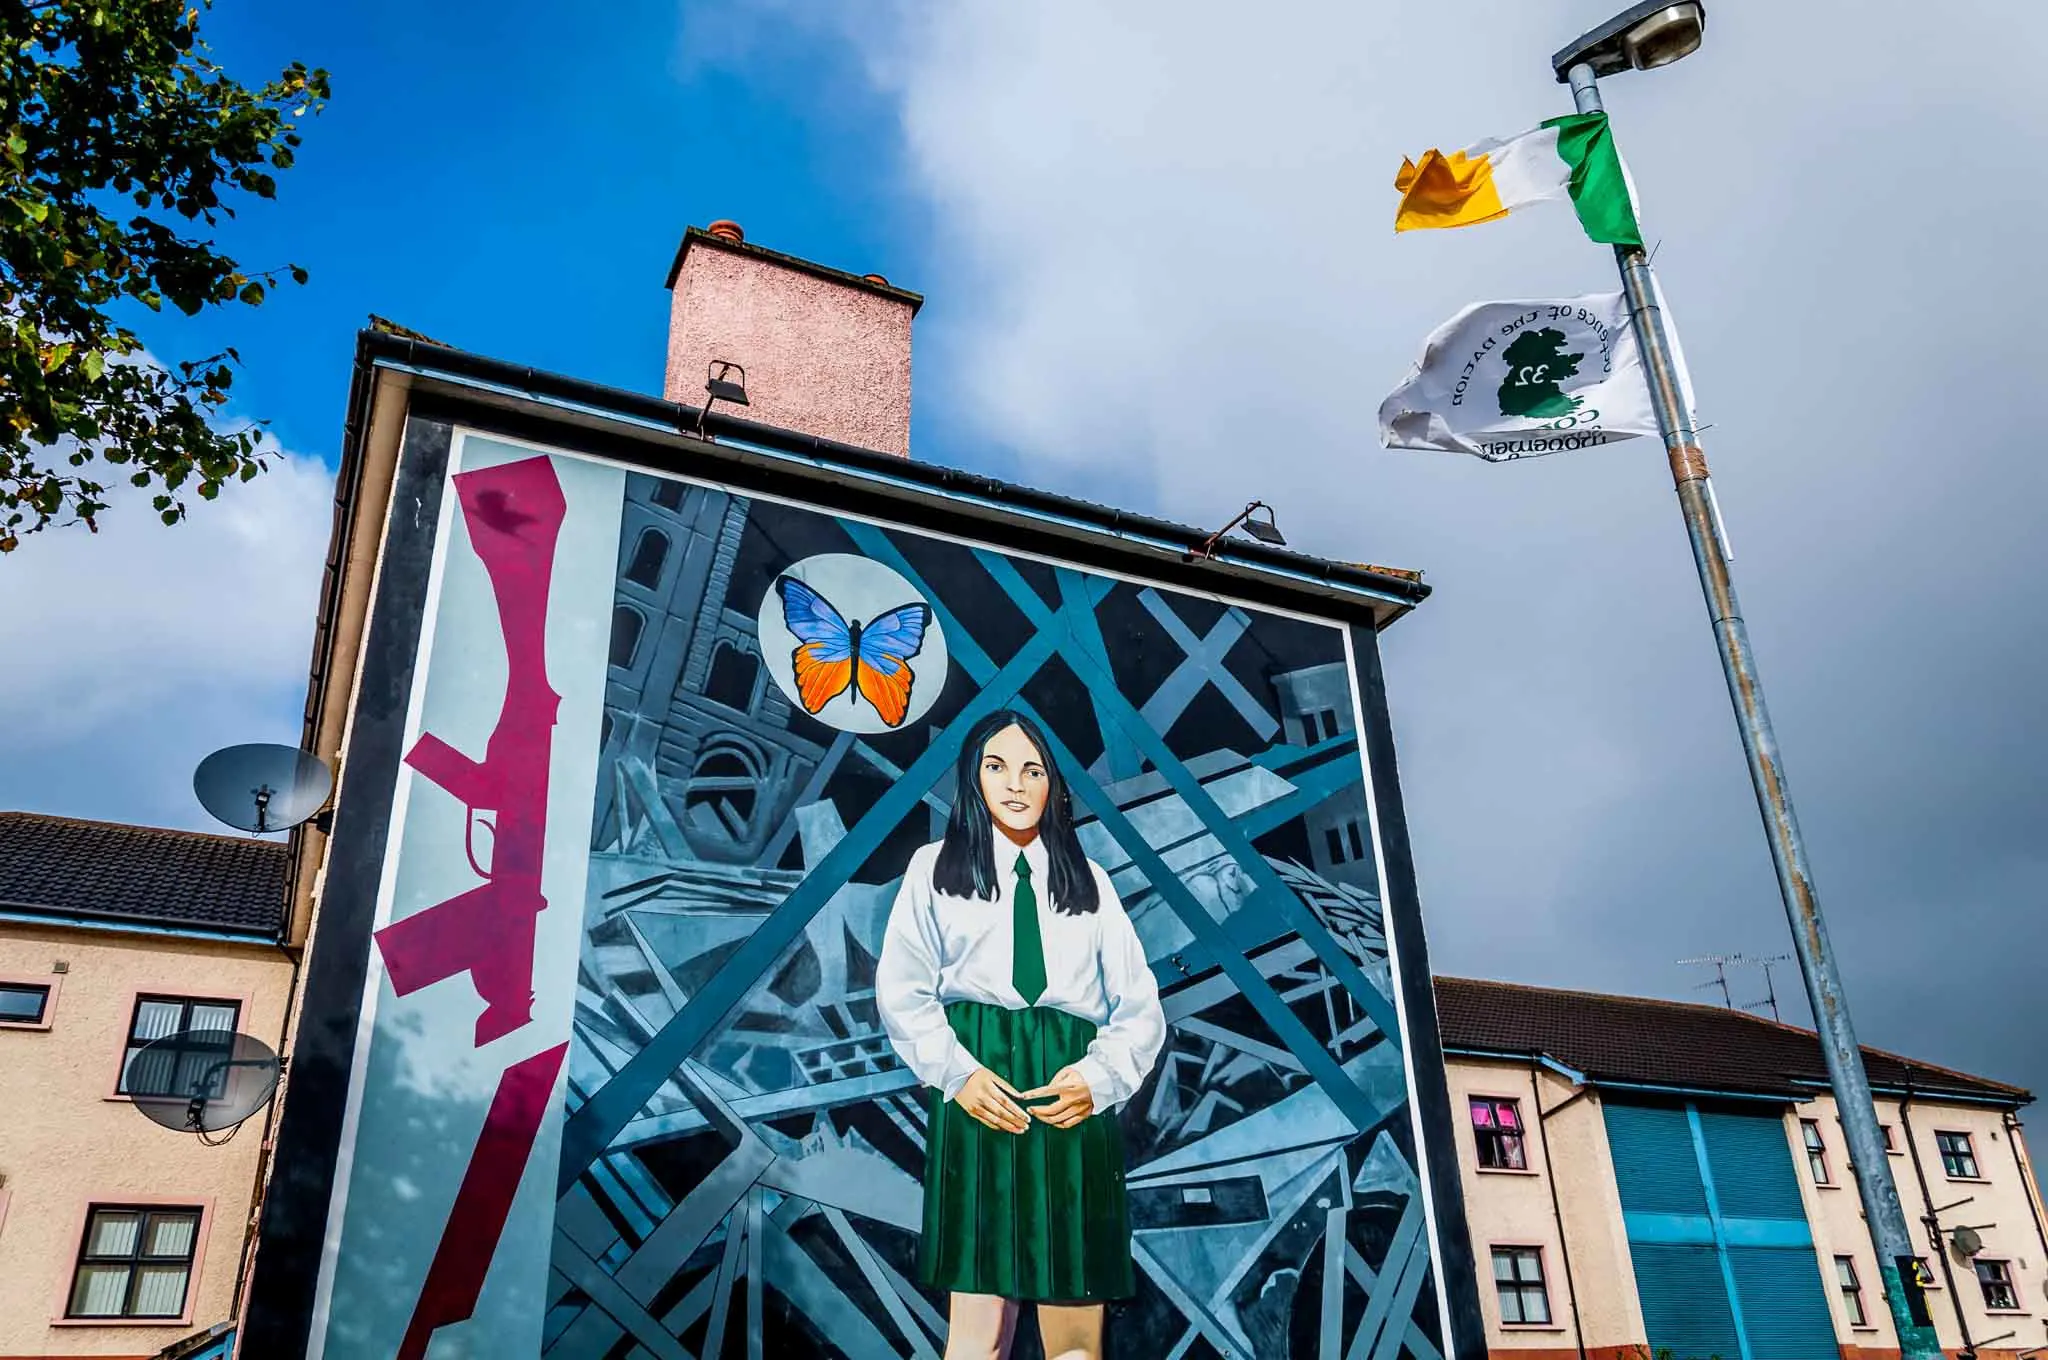 End of Innocence mural featuring girl in a school uniform alongside a broken rifle